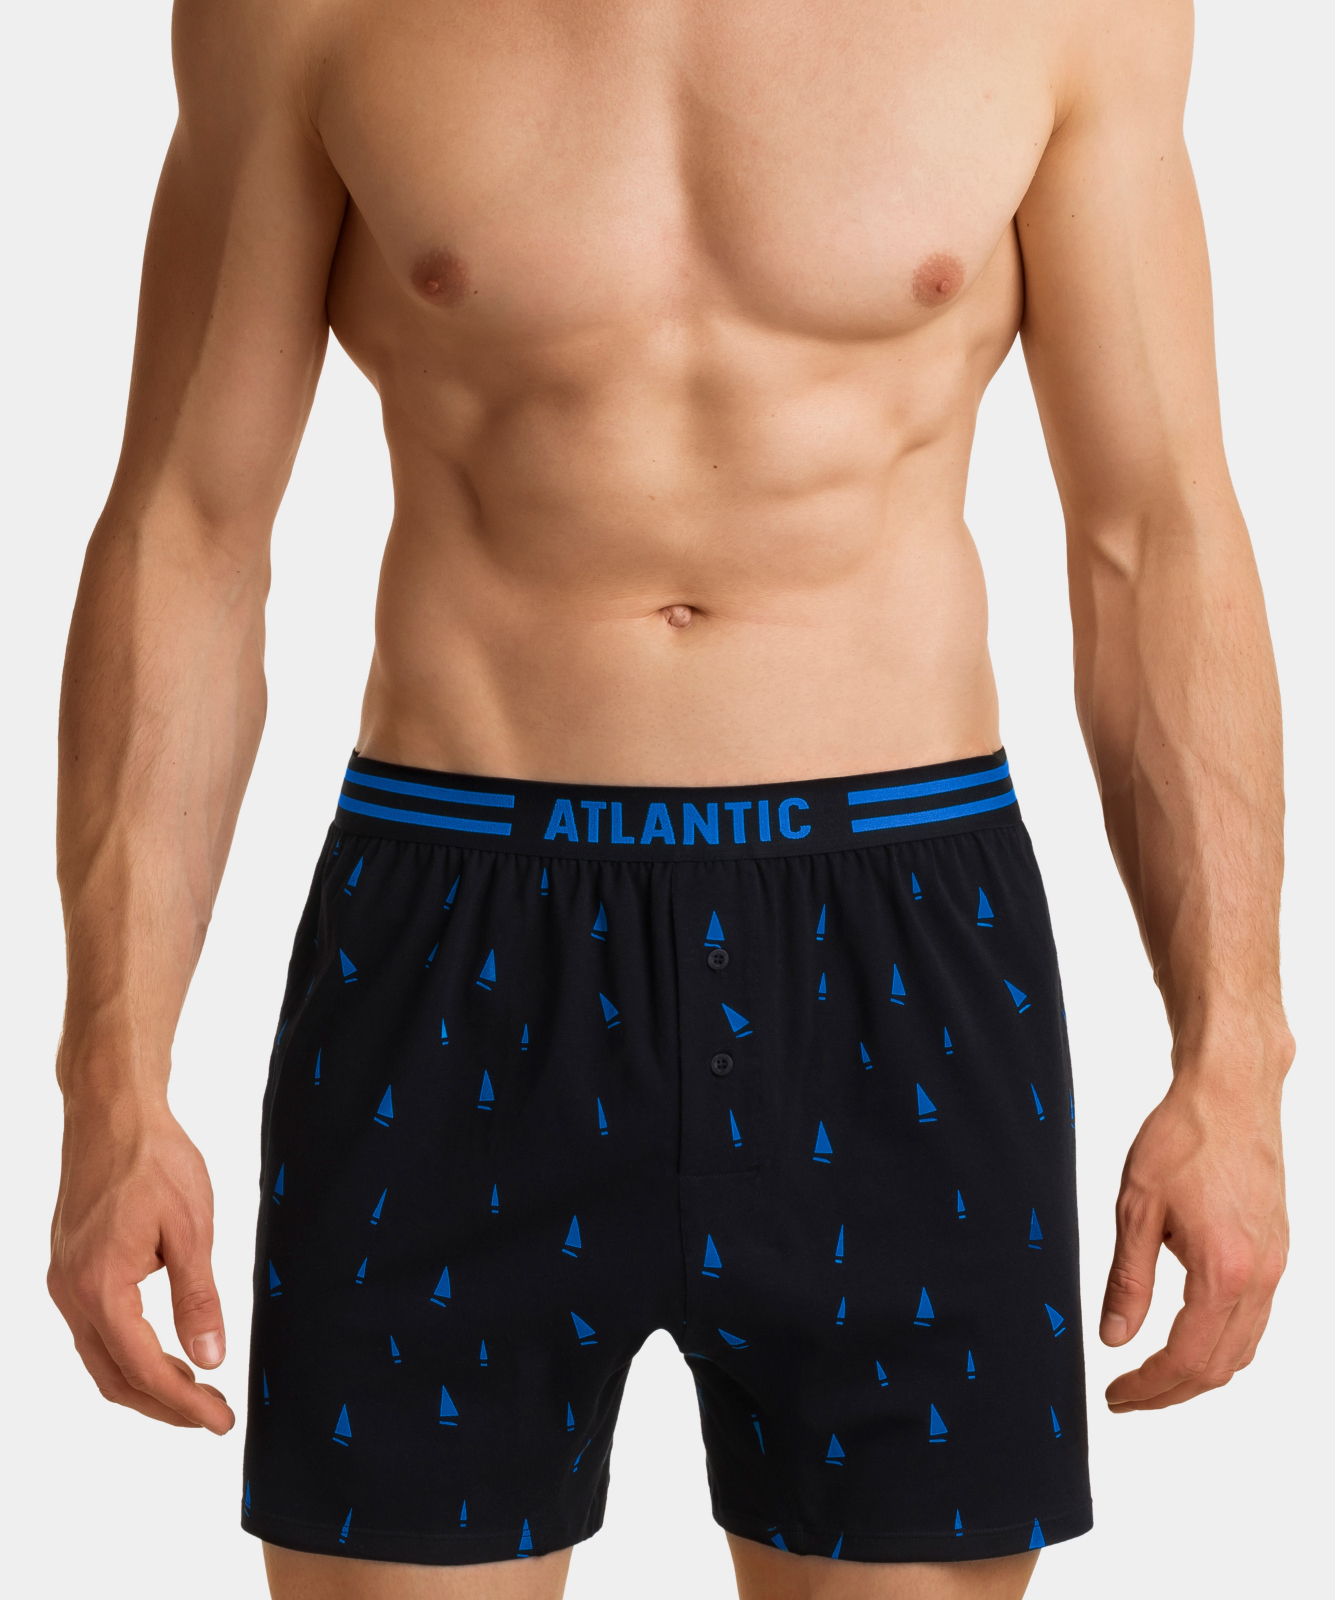 Atlantic мужские трусы боксеры 2MBX-015, Чёрный/Голубой